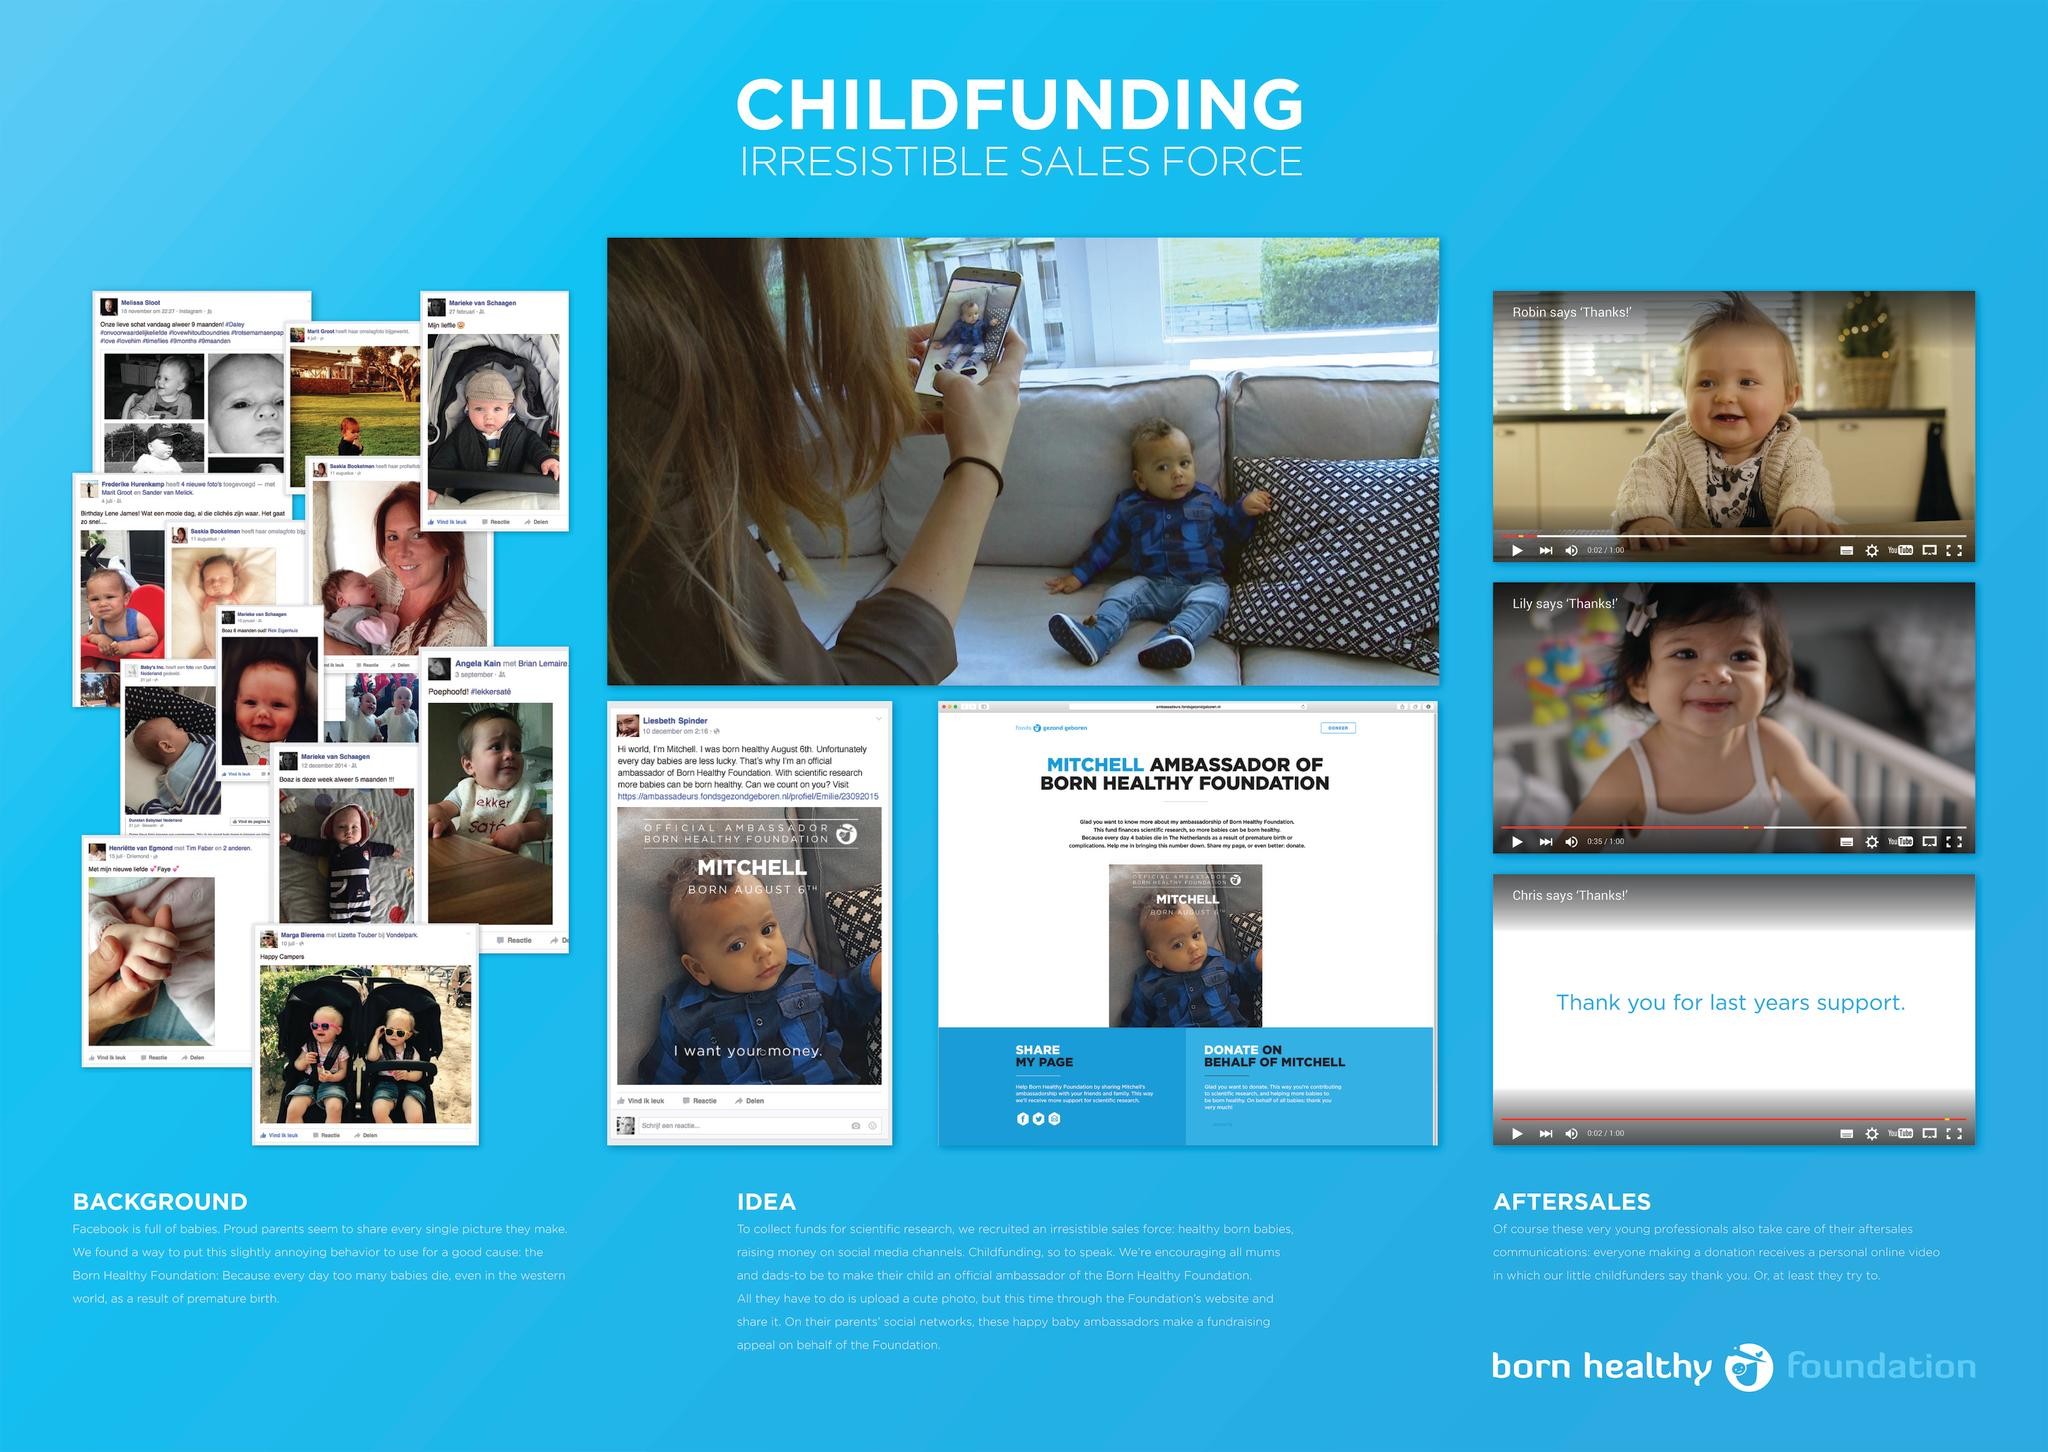 Childfunding